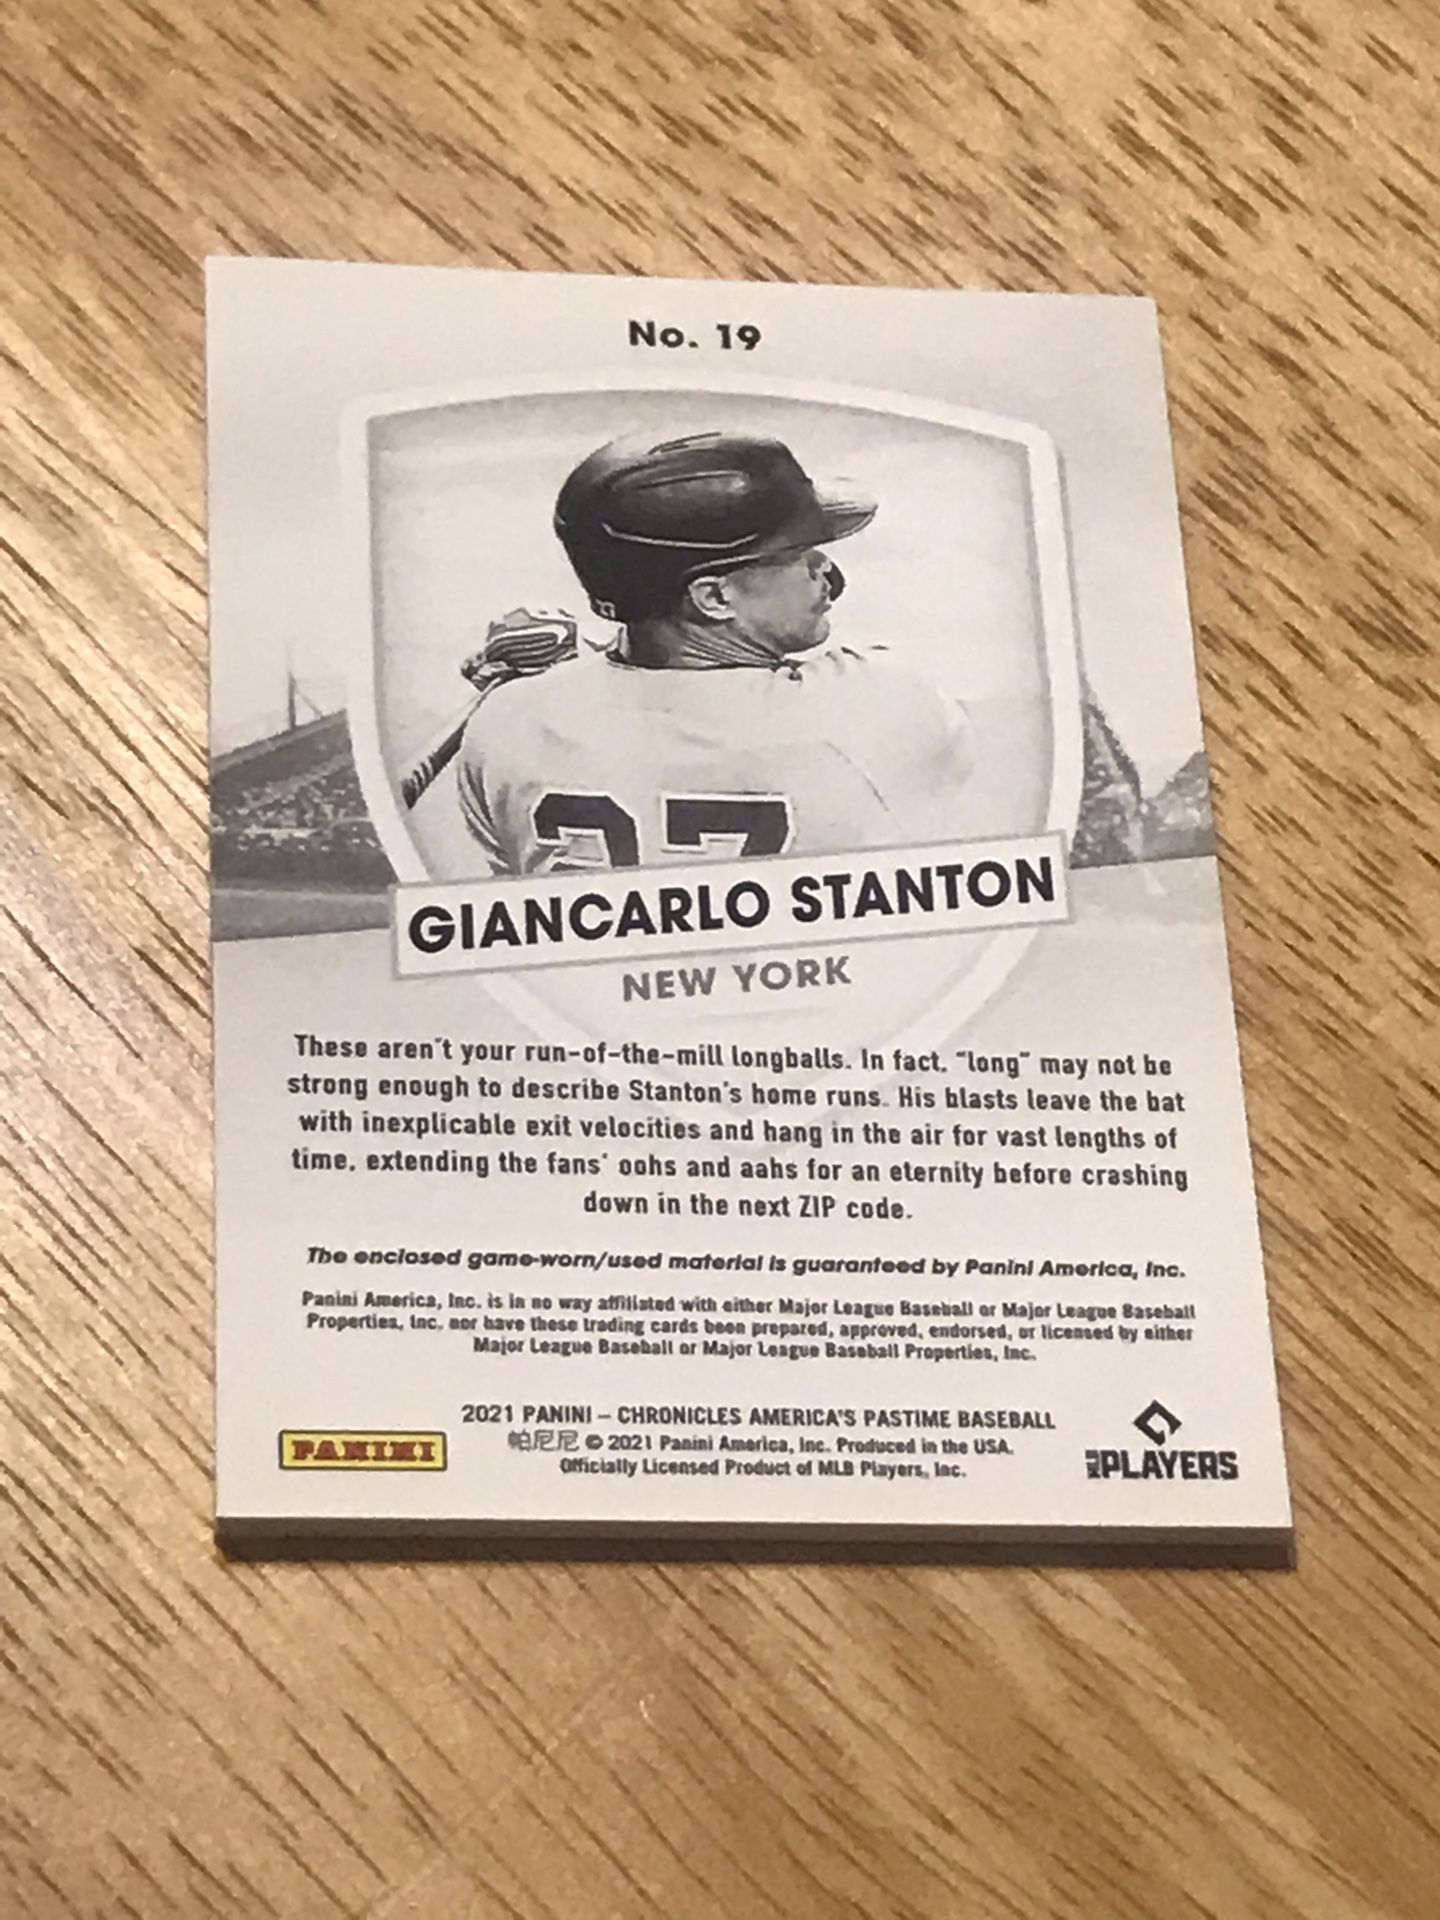 GIANCARLO STANTON jersey relic YANKEES baseball card